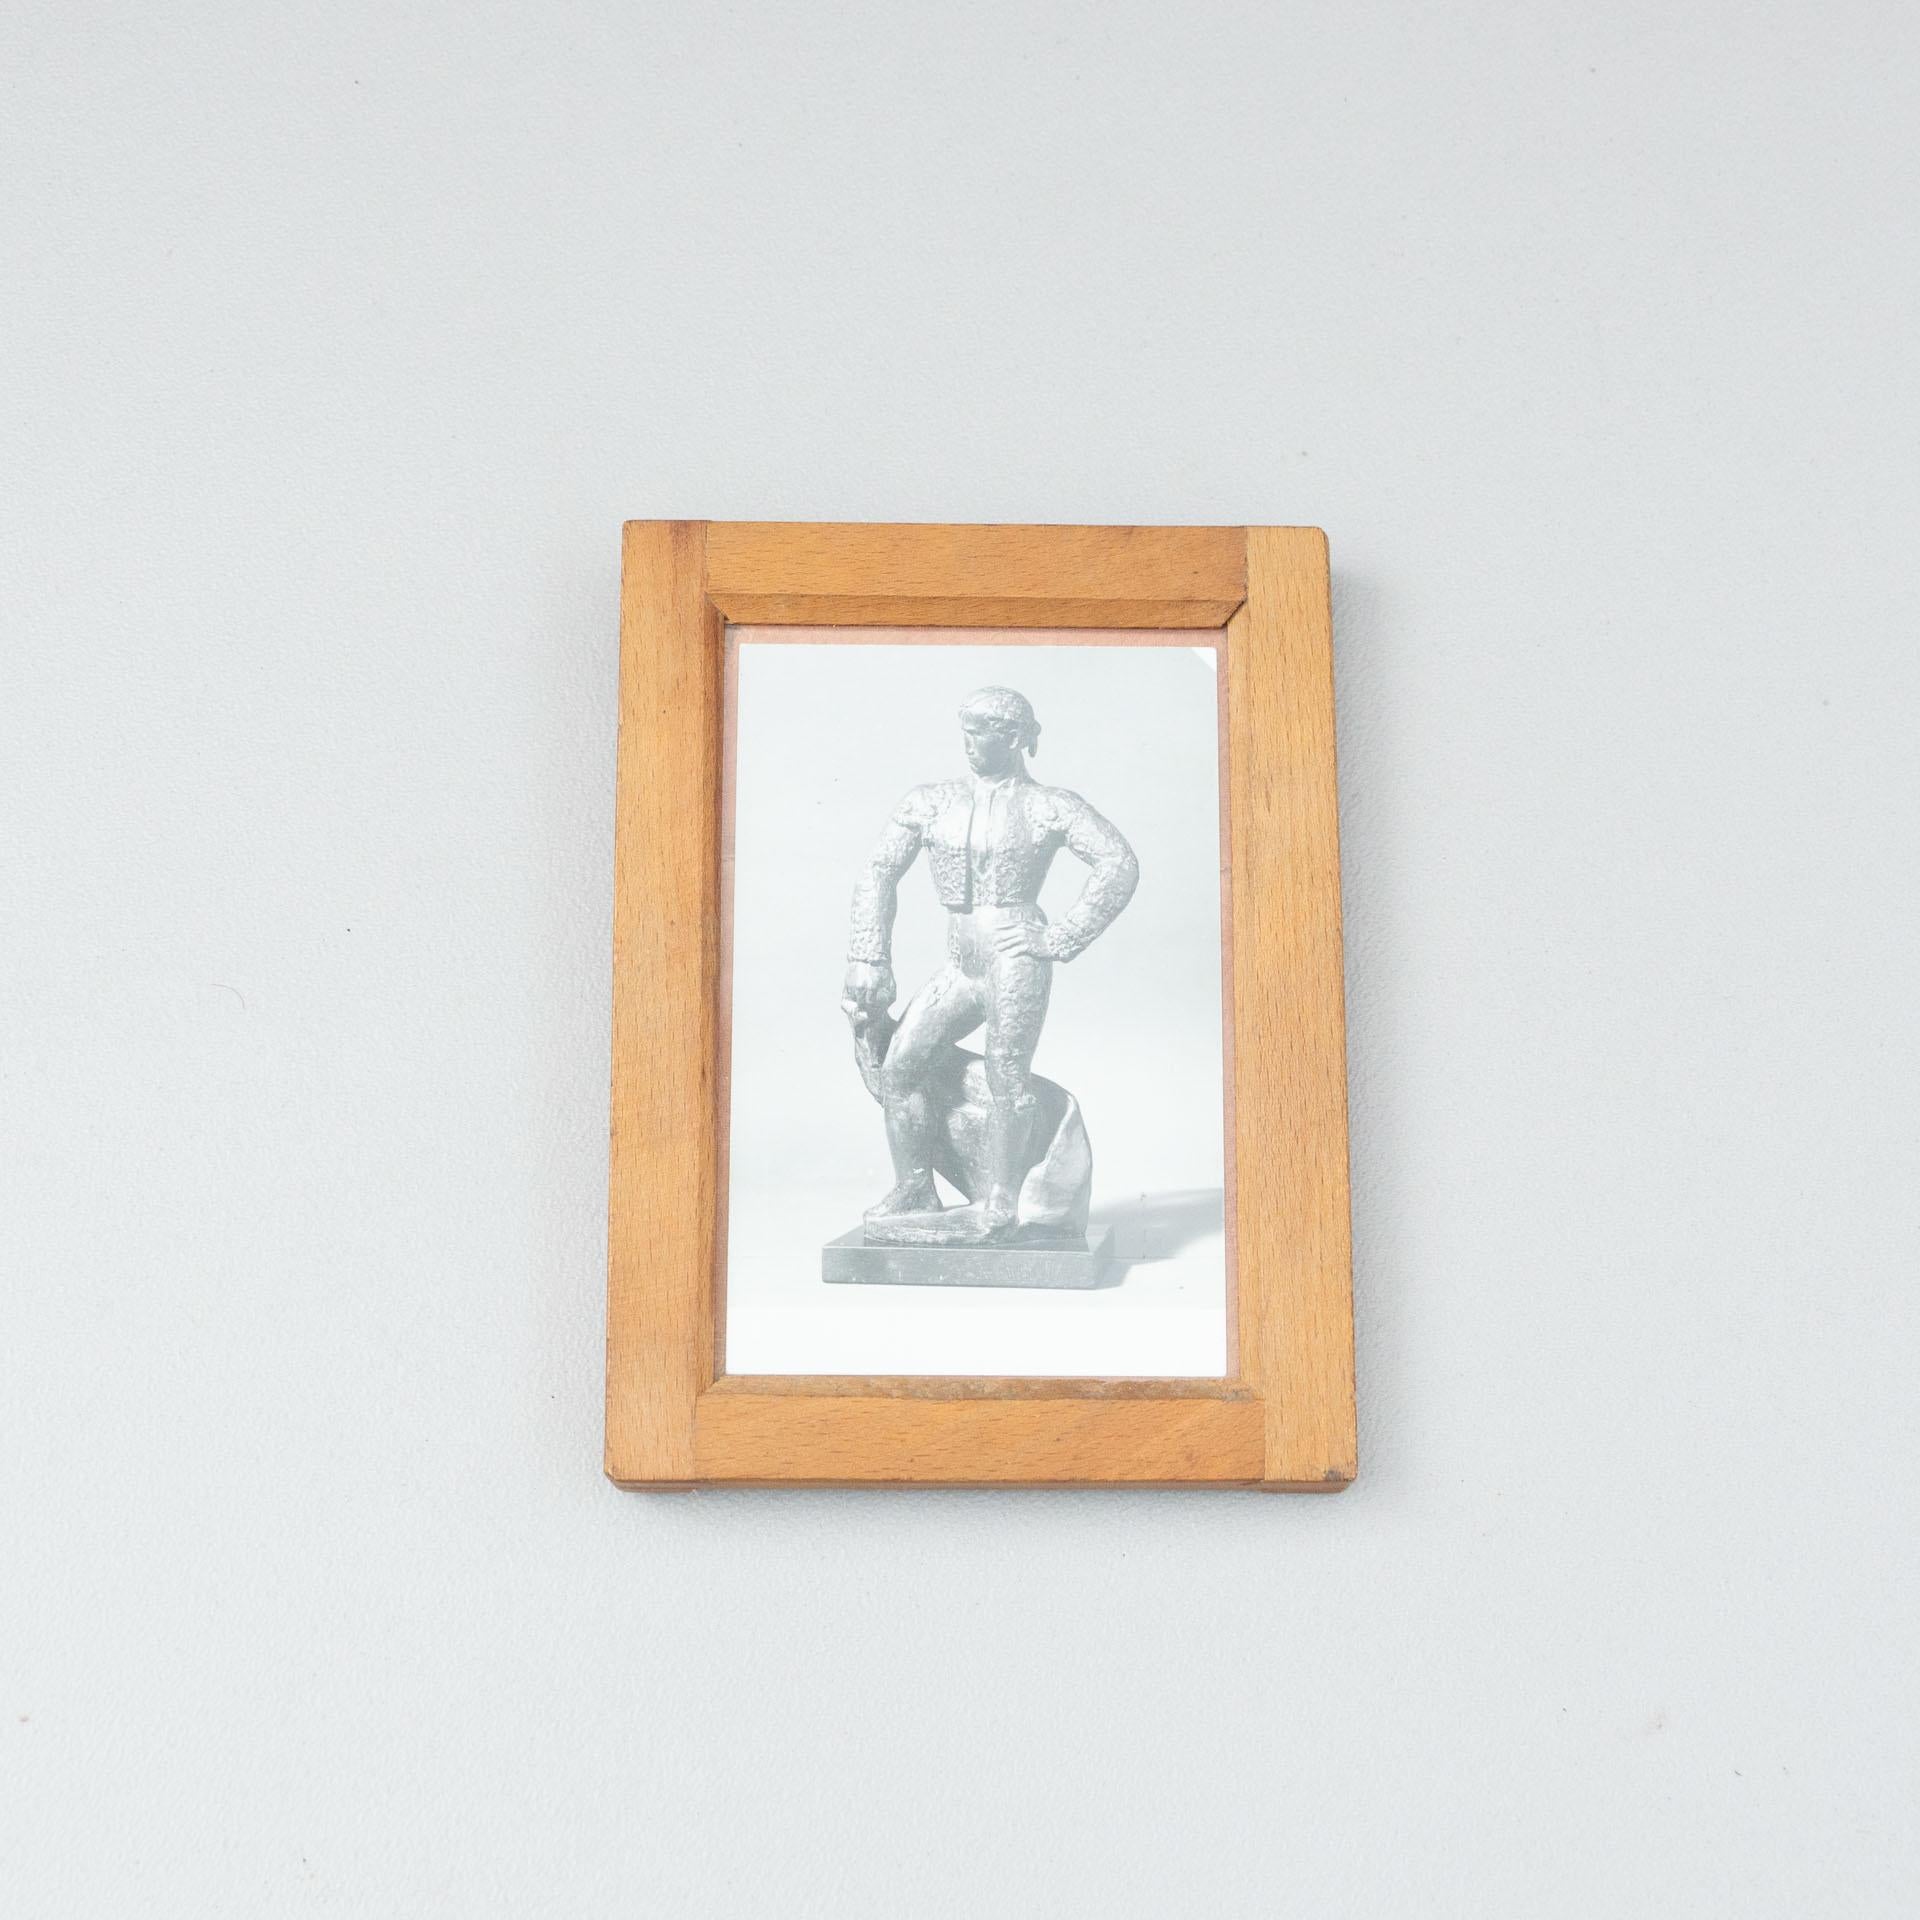 Manolo Hugués Archivfotografie von Skulpturen.
Gedruckt, um 1960.
Inklusive Holzrahmen.

Materialien:
Gelatinesilber-Bromiddruck

Abmessungen:
T 1,5 cm x B 13,5 cm x H 18,5 cm

Wir bieten kostenlosen weltweiten Versand für dieses Stück.